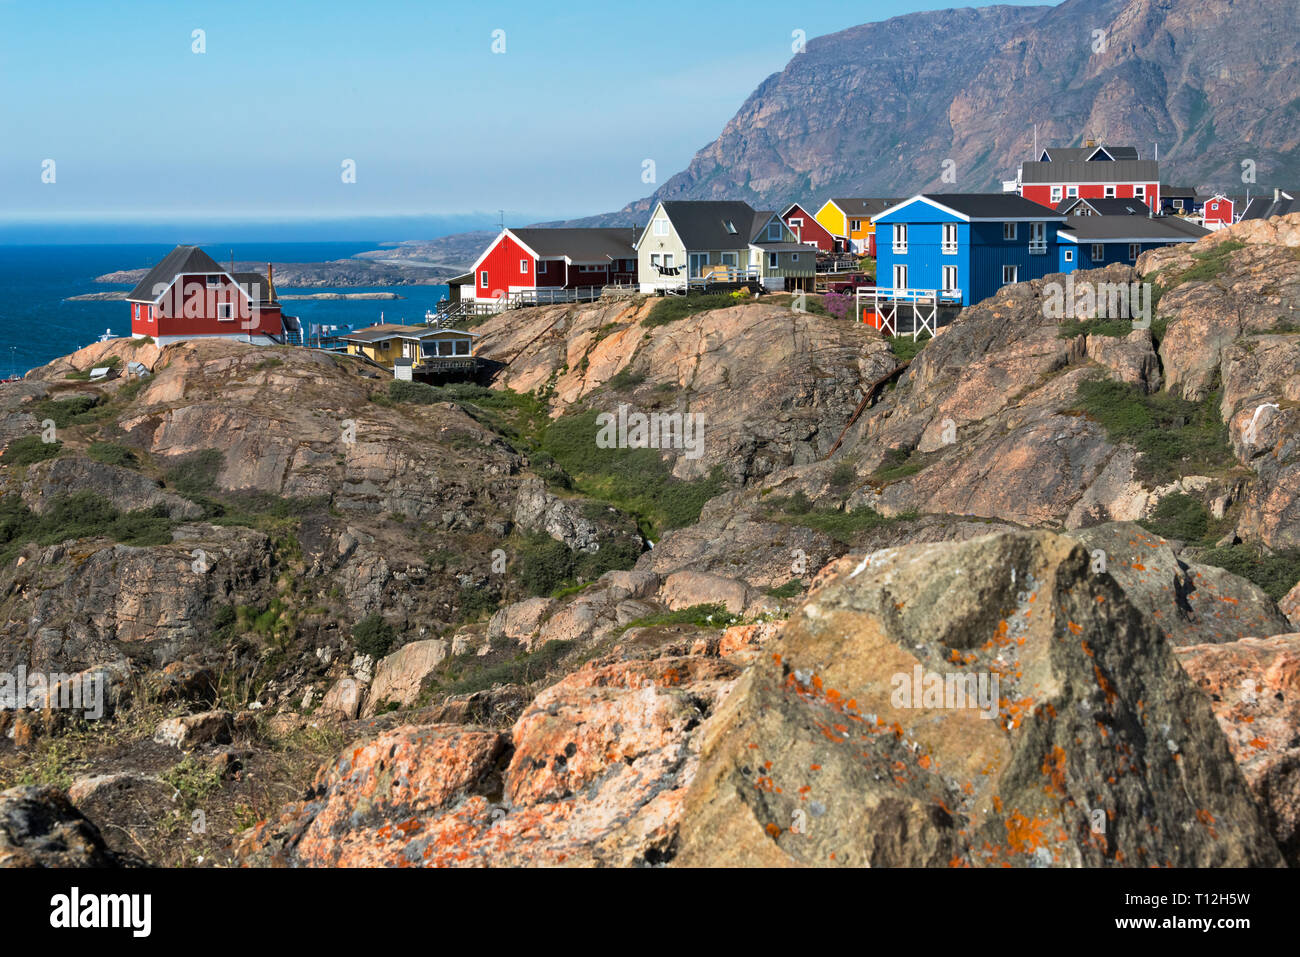 Maisons peintes de couleurs vives, Sisimiut, Groenland Banque D'Images